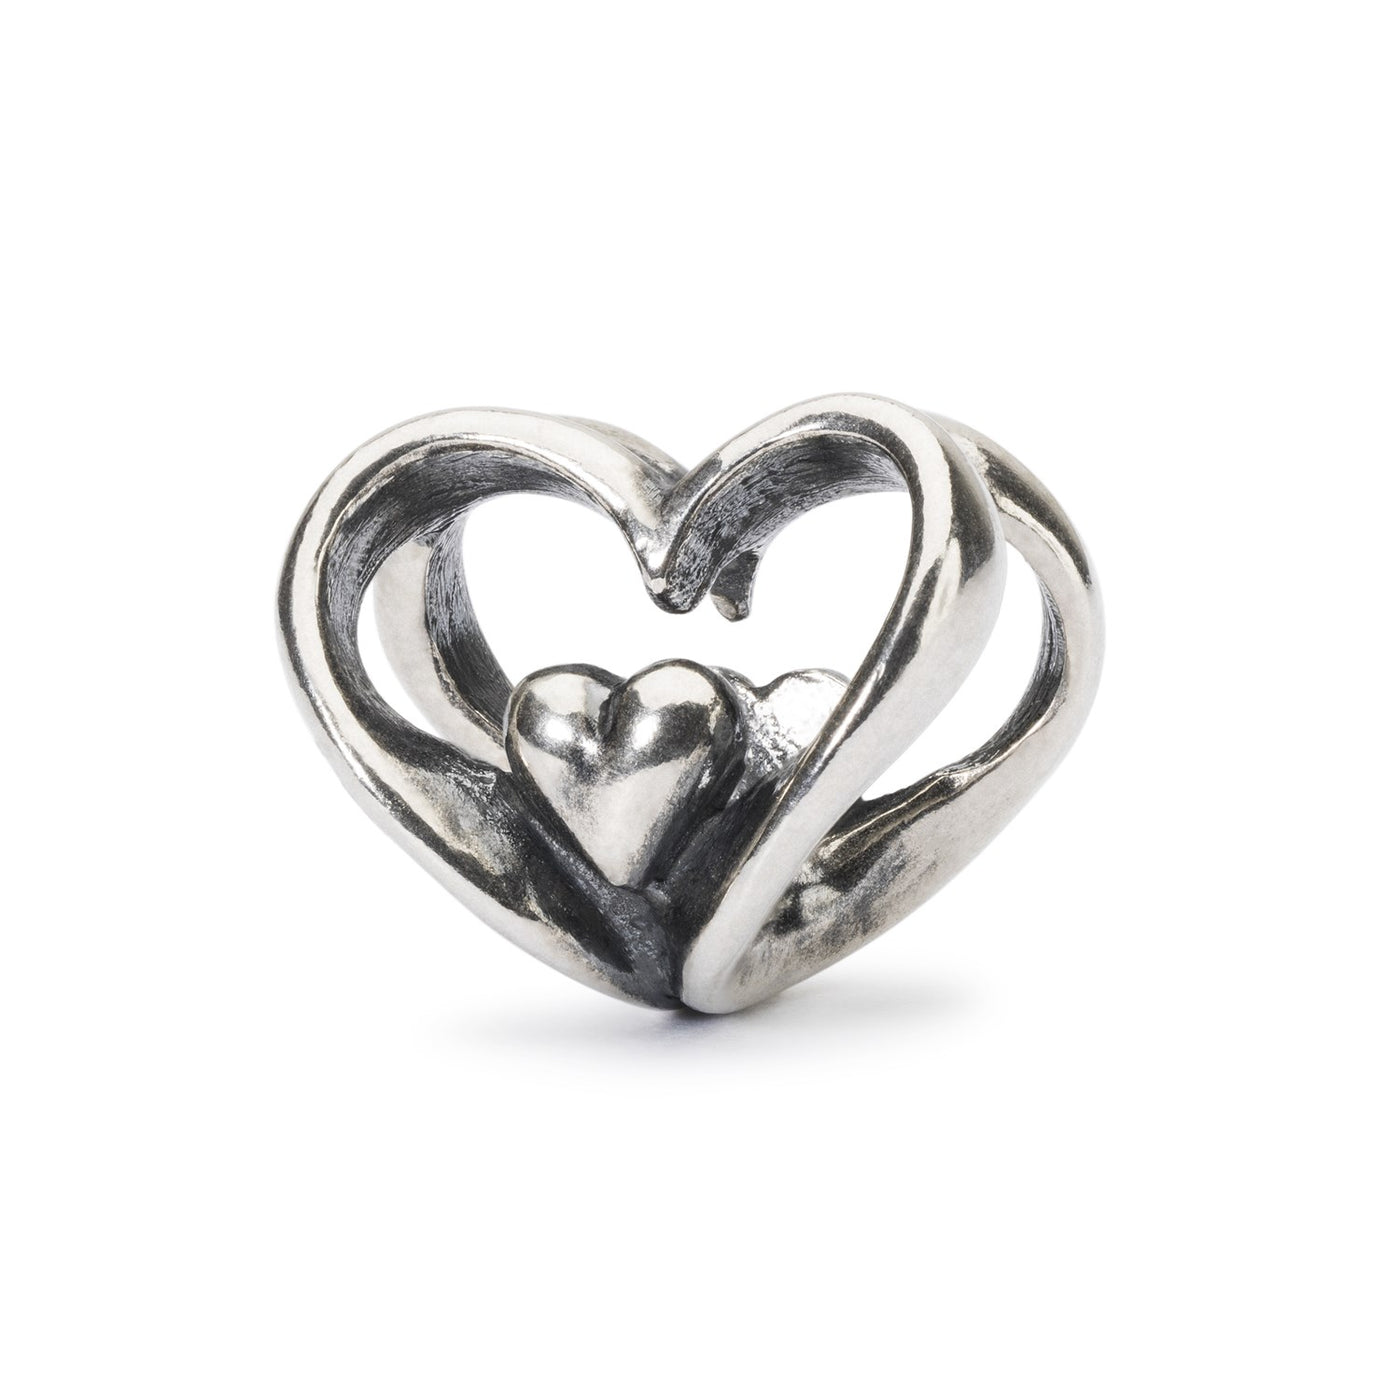 Kugle lavet udelukkende af sølv med to sammenlåste hjerter, der har mindre hjerter indeni. Symboliserer kærlighed og forbindelse.